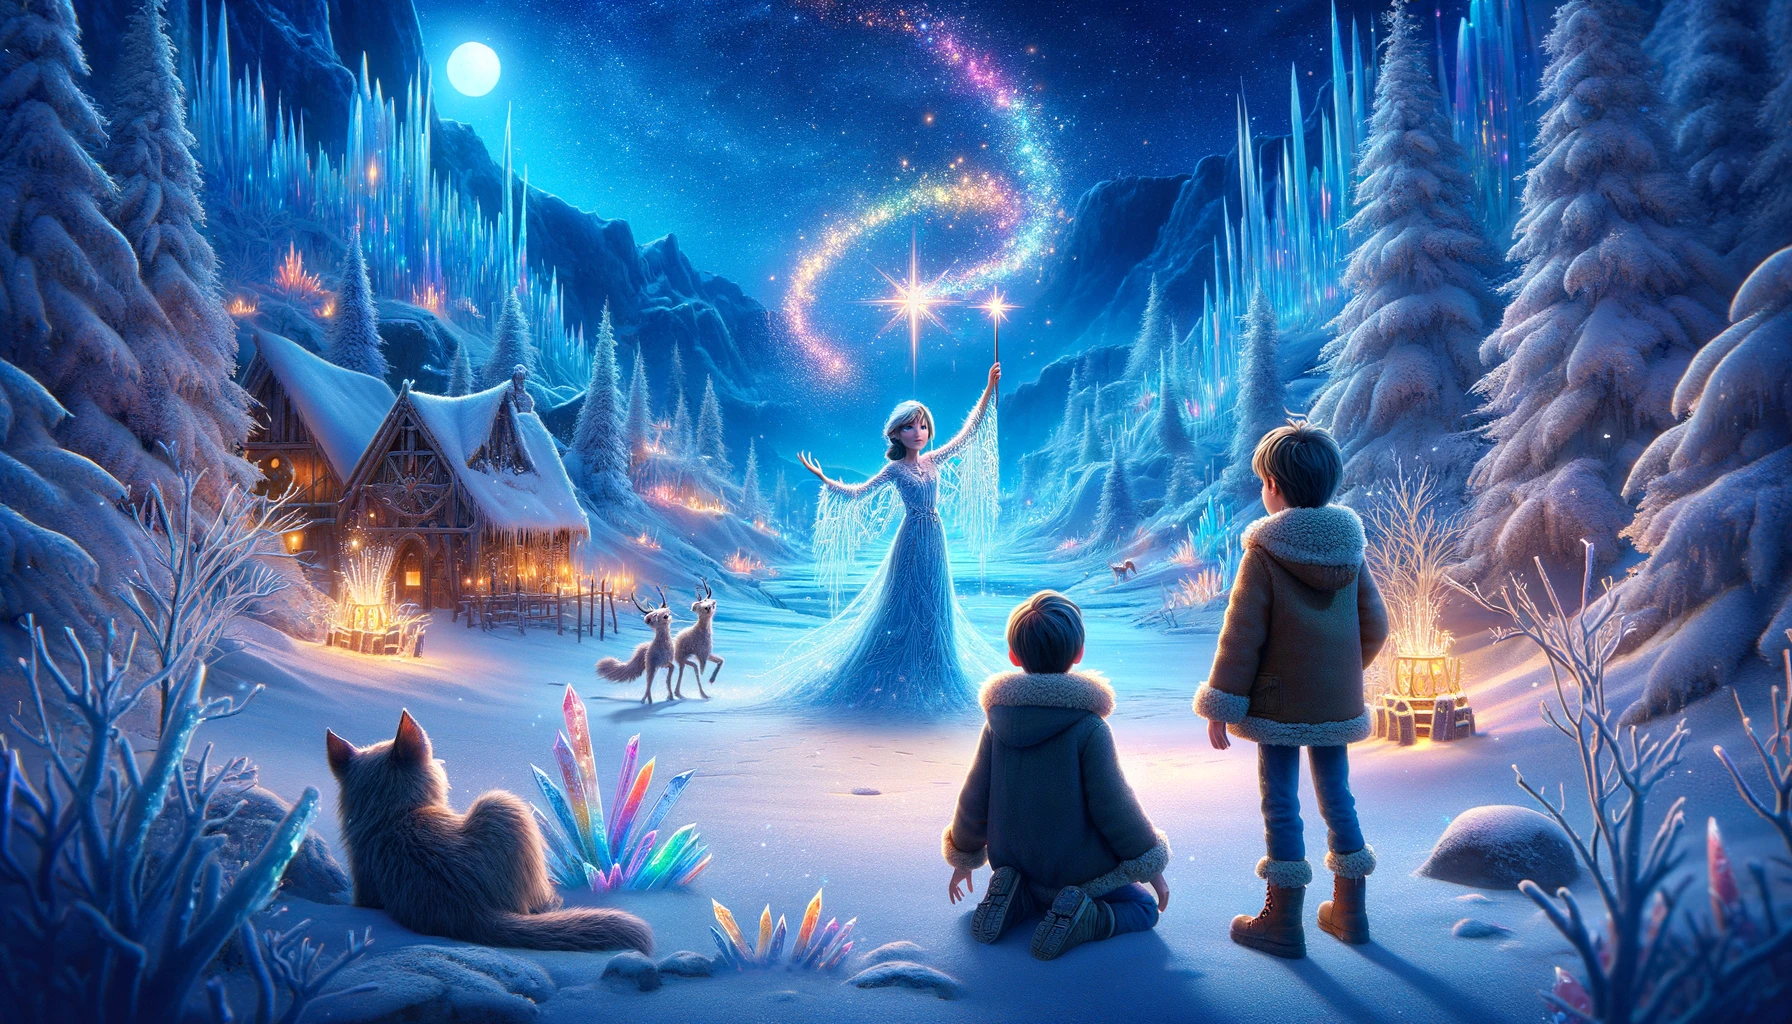 Das Bild fängt den zauberhaften Beginn ihrer Reise in die magische Welt von Winterbrück ein, wo Tom, Lino und Klara von der winterlichen Pracht und den leuchtenden Eiskristallen unter einem sternklaren Nachthimmel umgeben sind.